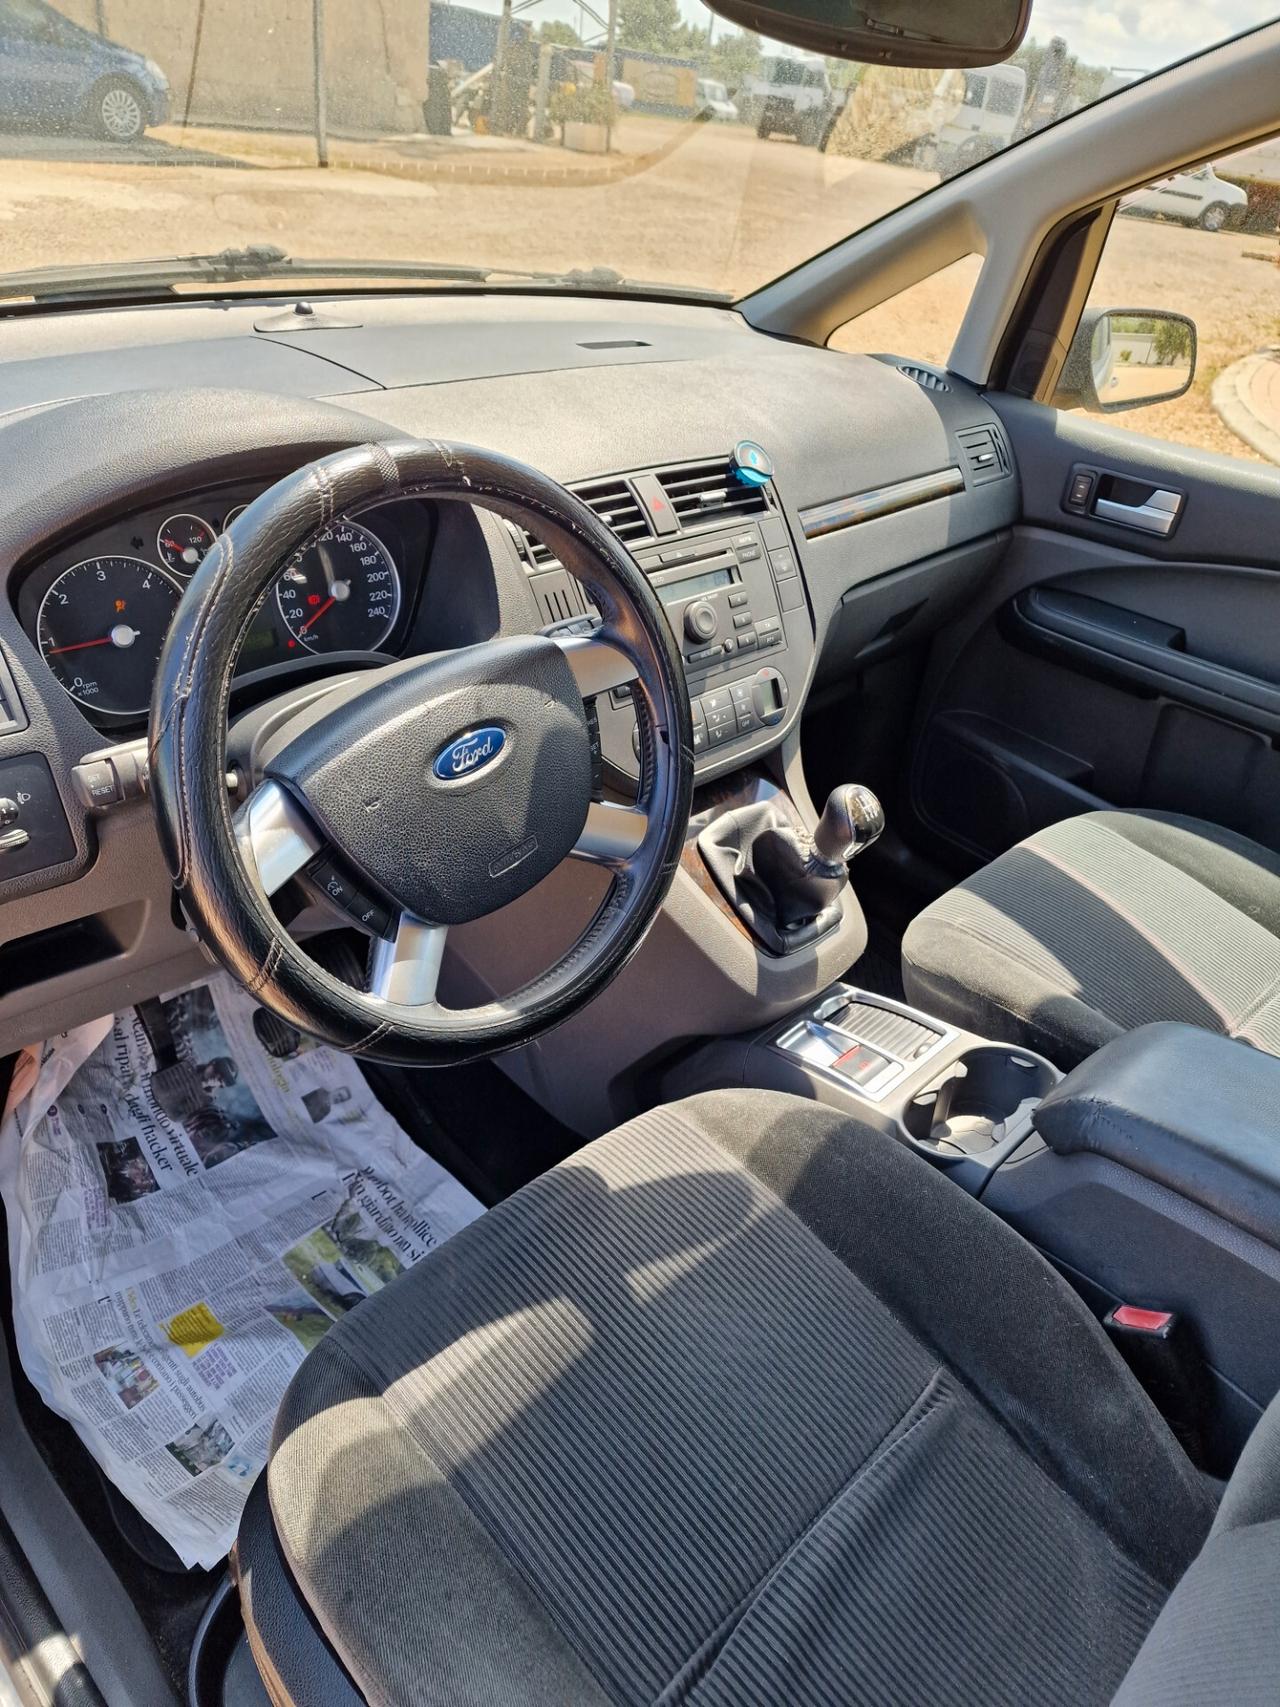 Ford Focus C-Max 1.6 TDCi (110CV)